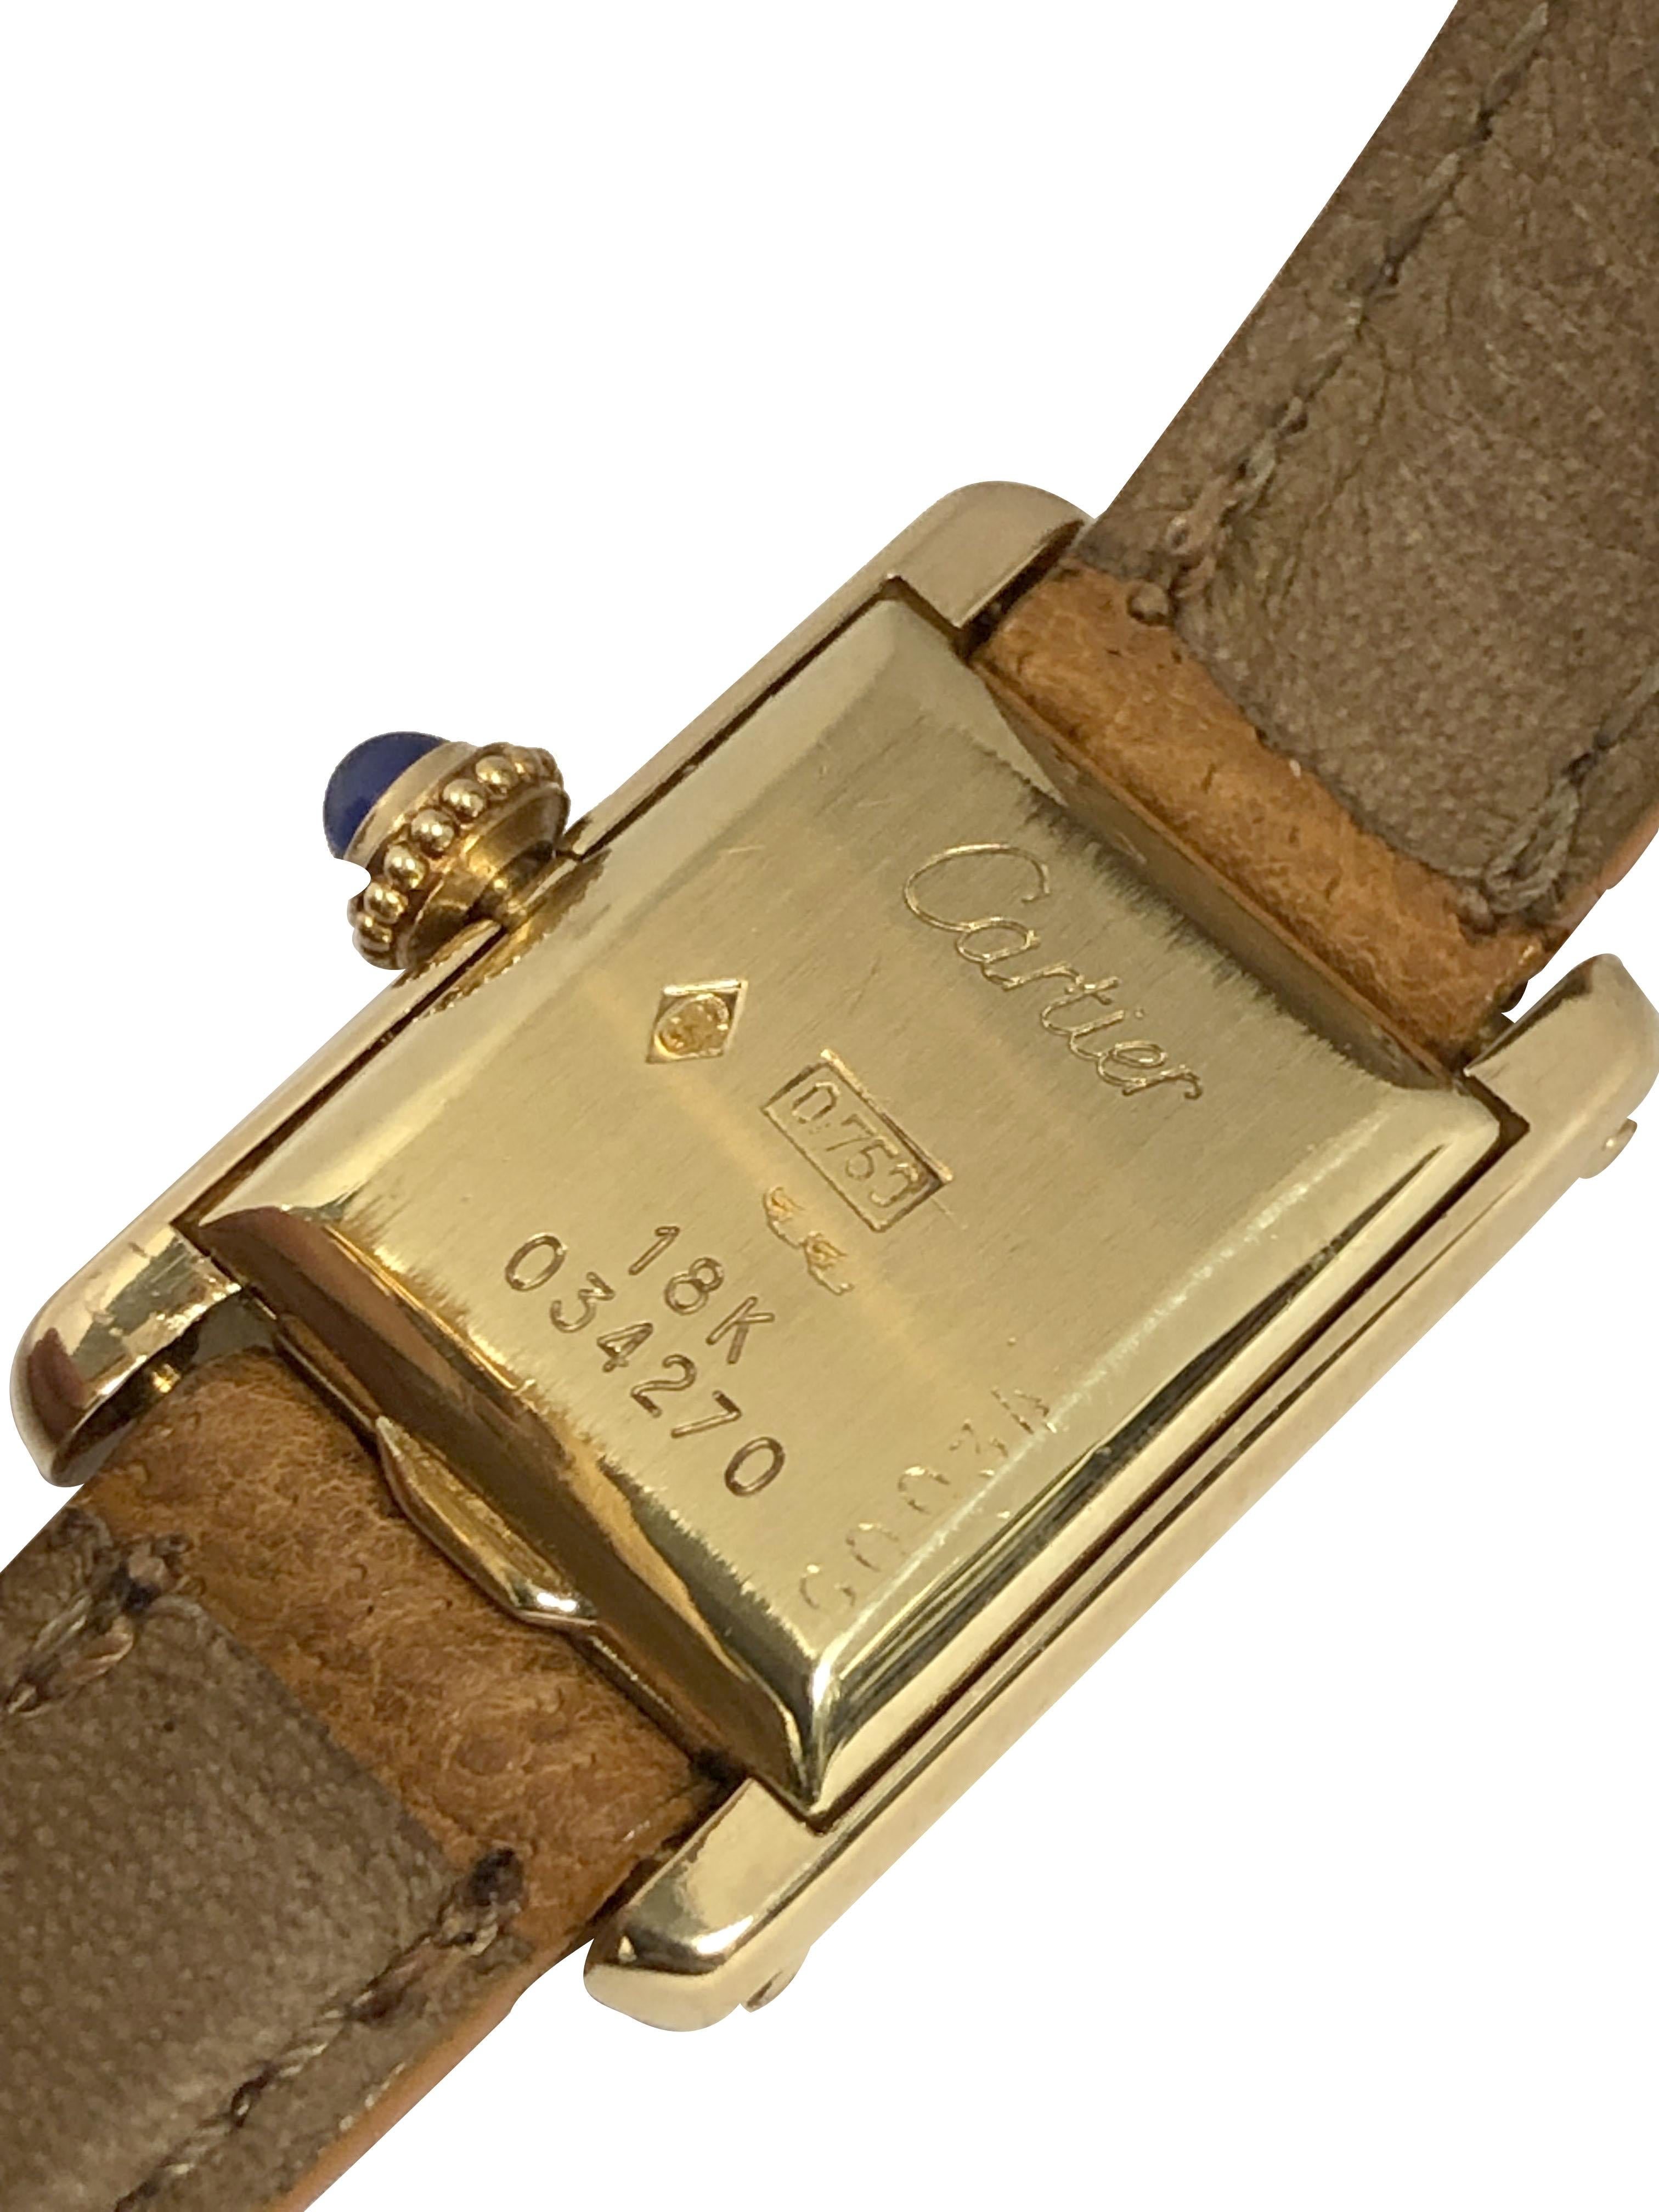 Circa 1970s Scarce and Hard to Find Mini Tank Wrist Watch, 23 x 15 M.M. (  ) Boîtier 2 pièces en or jaune 18k. Cartier Inc. Mouvement mécanique à levier nickelé à remontage manuel, couronne sertie de saphirs. Bracelet Cartier en cuir fauve de 10